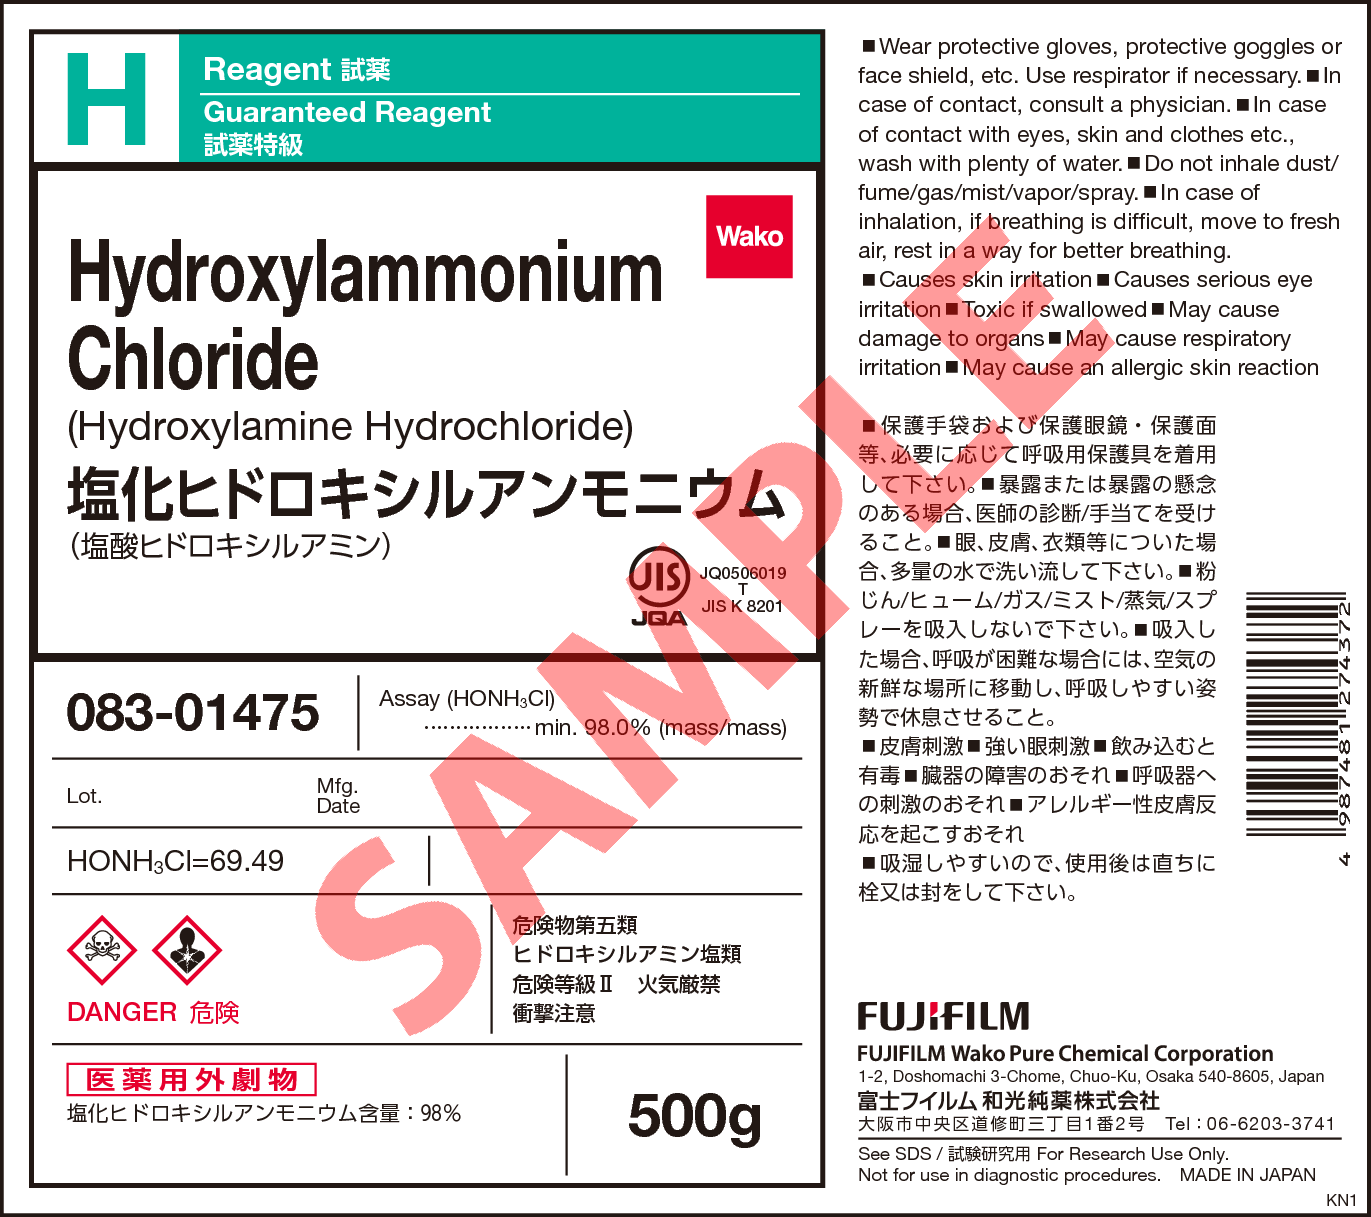 5470 11 1 塩化ヒドロキシルアンモニウム Hydroxylammonium Chloride 0 081 0 詳細情報 常用試薬 ラボウェア 試薬 富士フイルム和光純薬